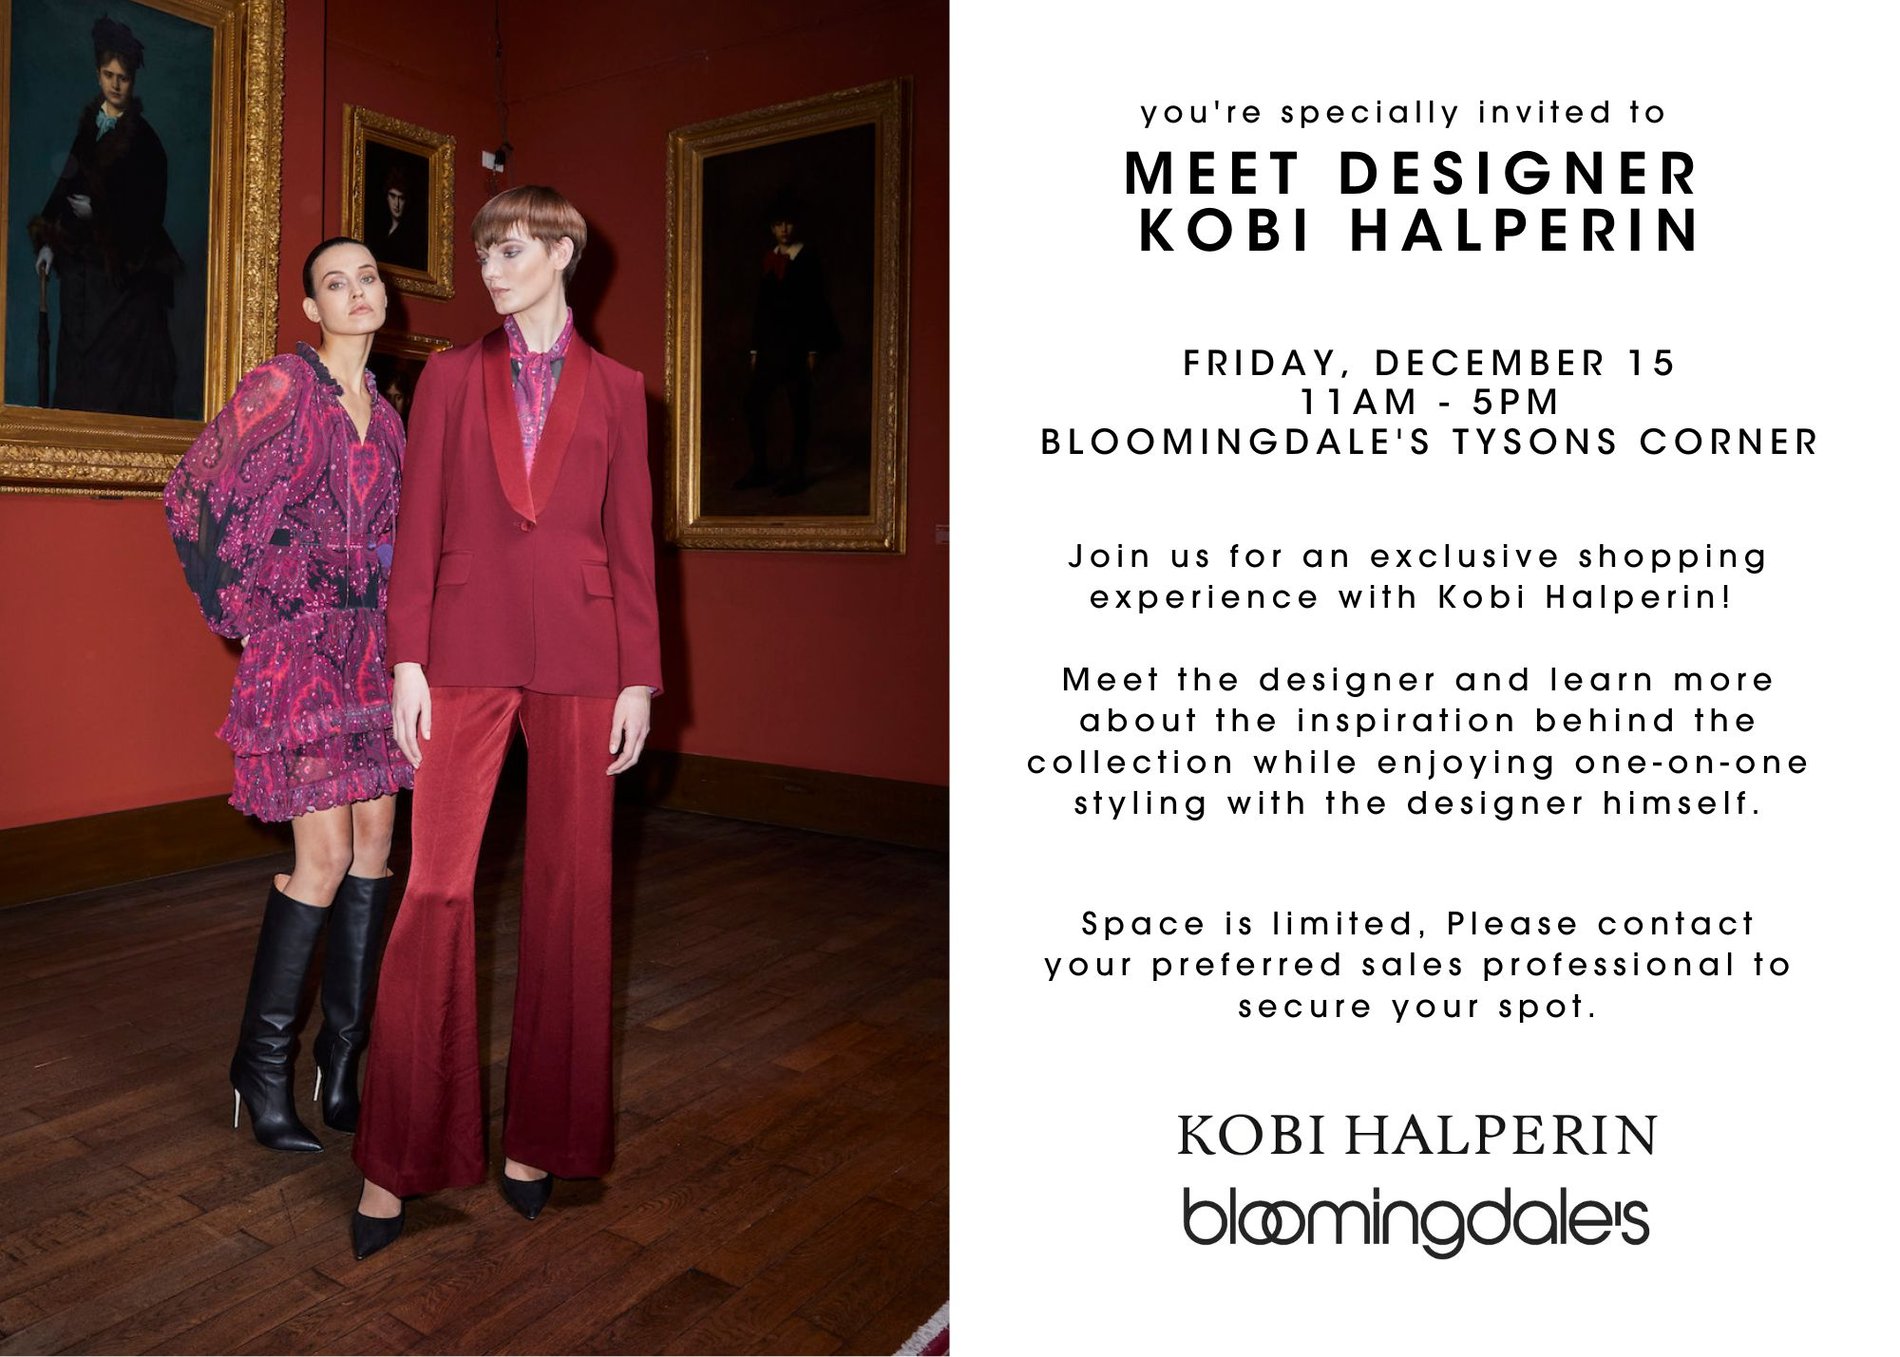 Designer Diaper Bags & More - Bloomingdale's